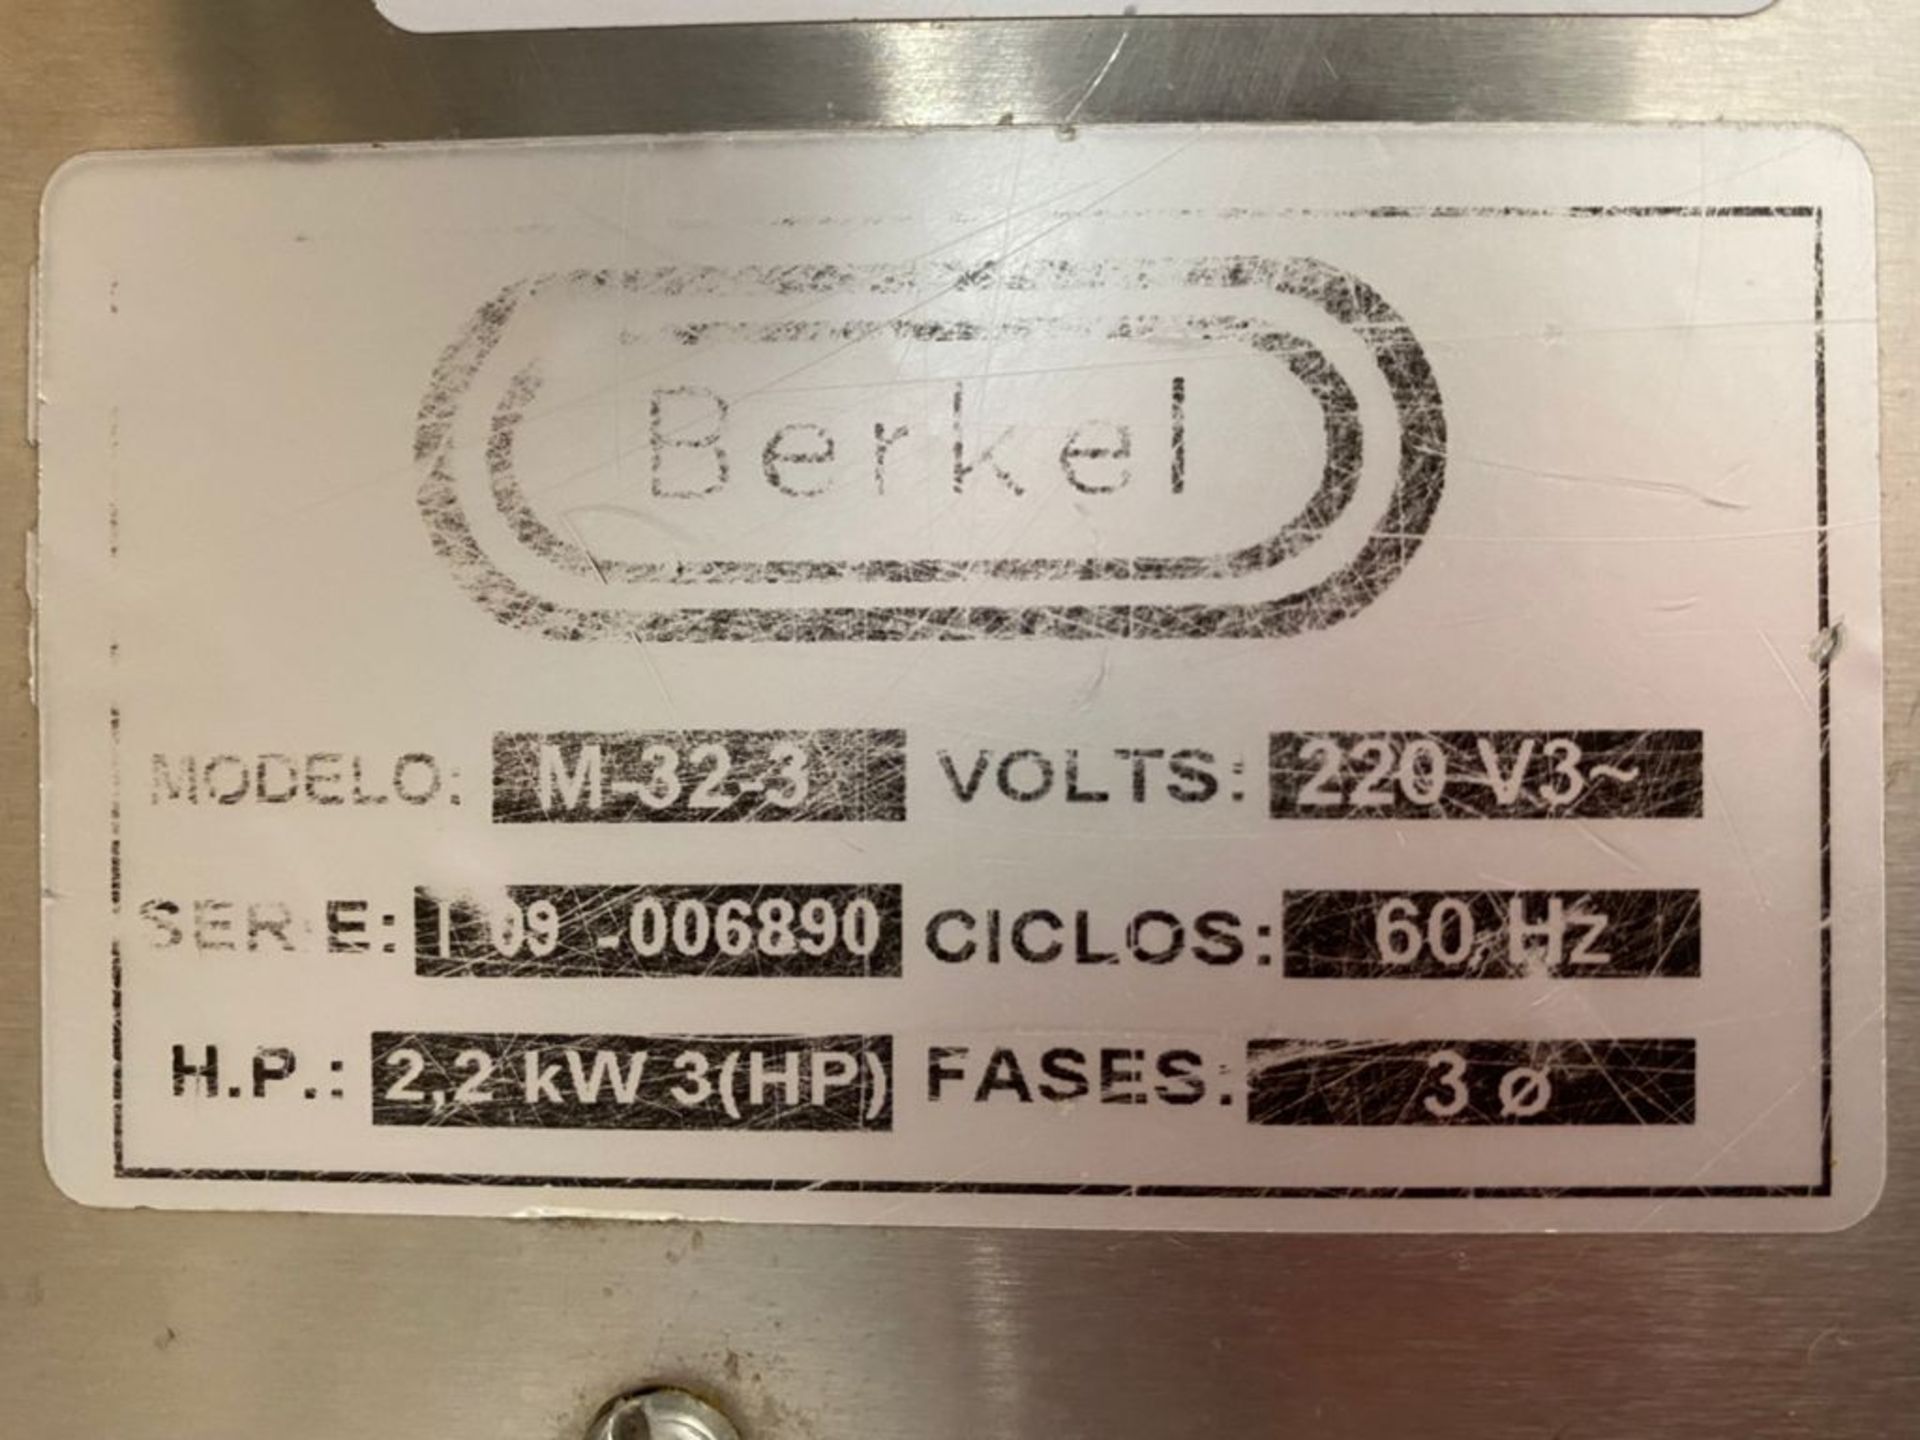 1 Molino para carne marca Berkel modelo M-32-3 de 3HP 220v, No de serie T09-006890 - Image 10 of 11